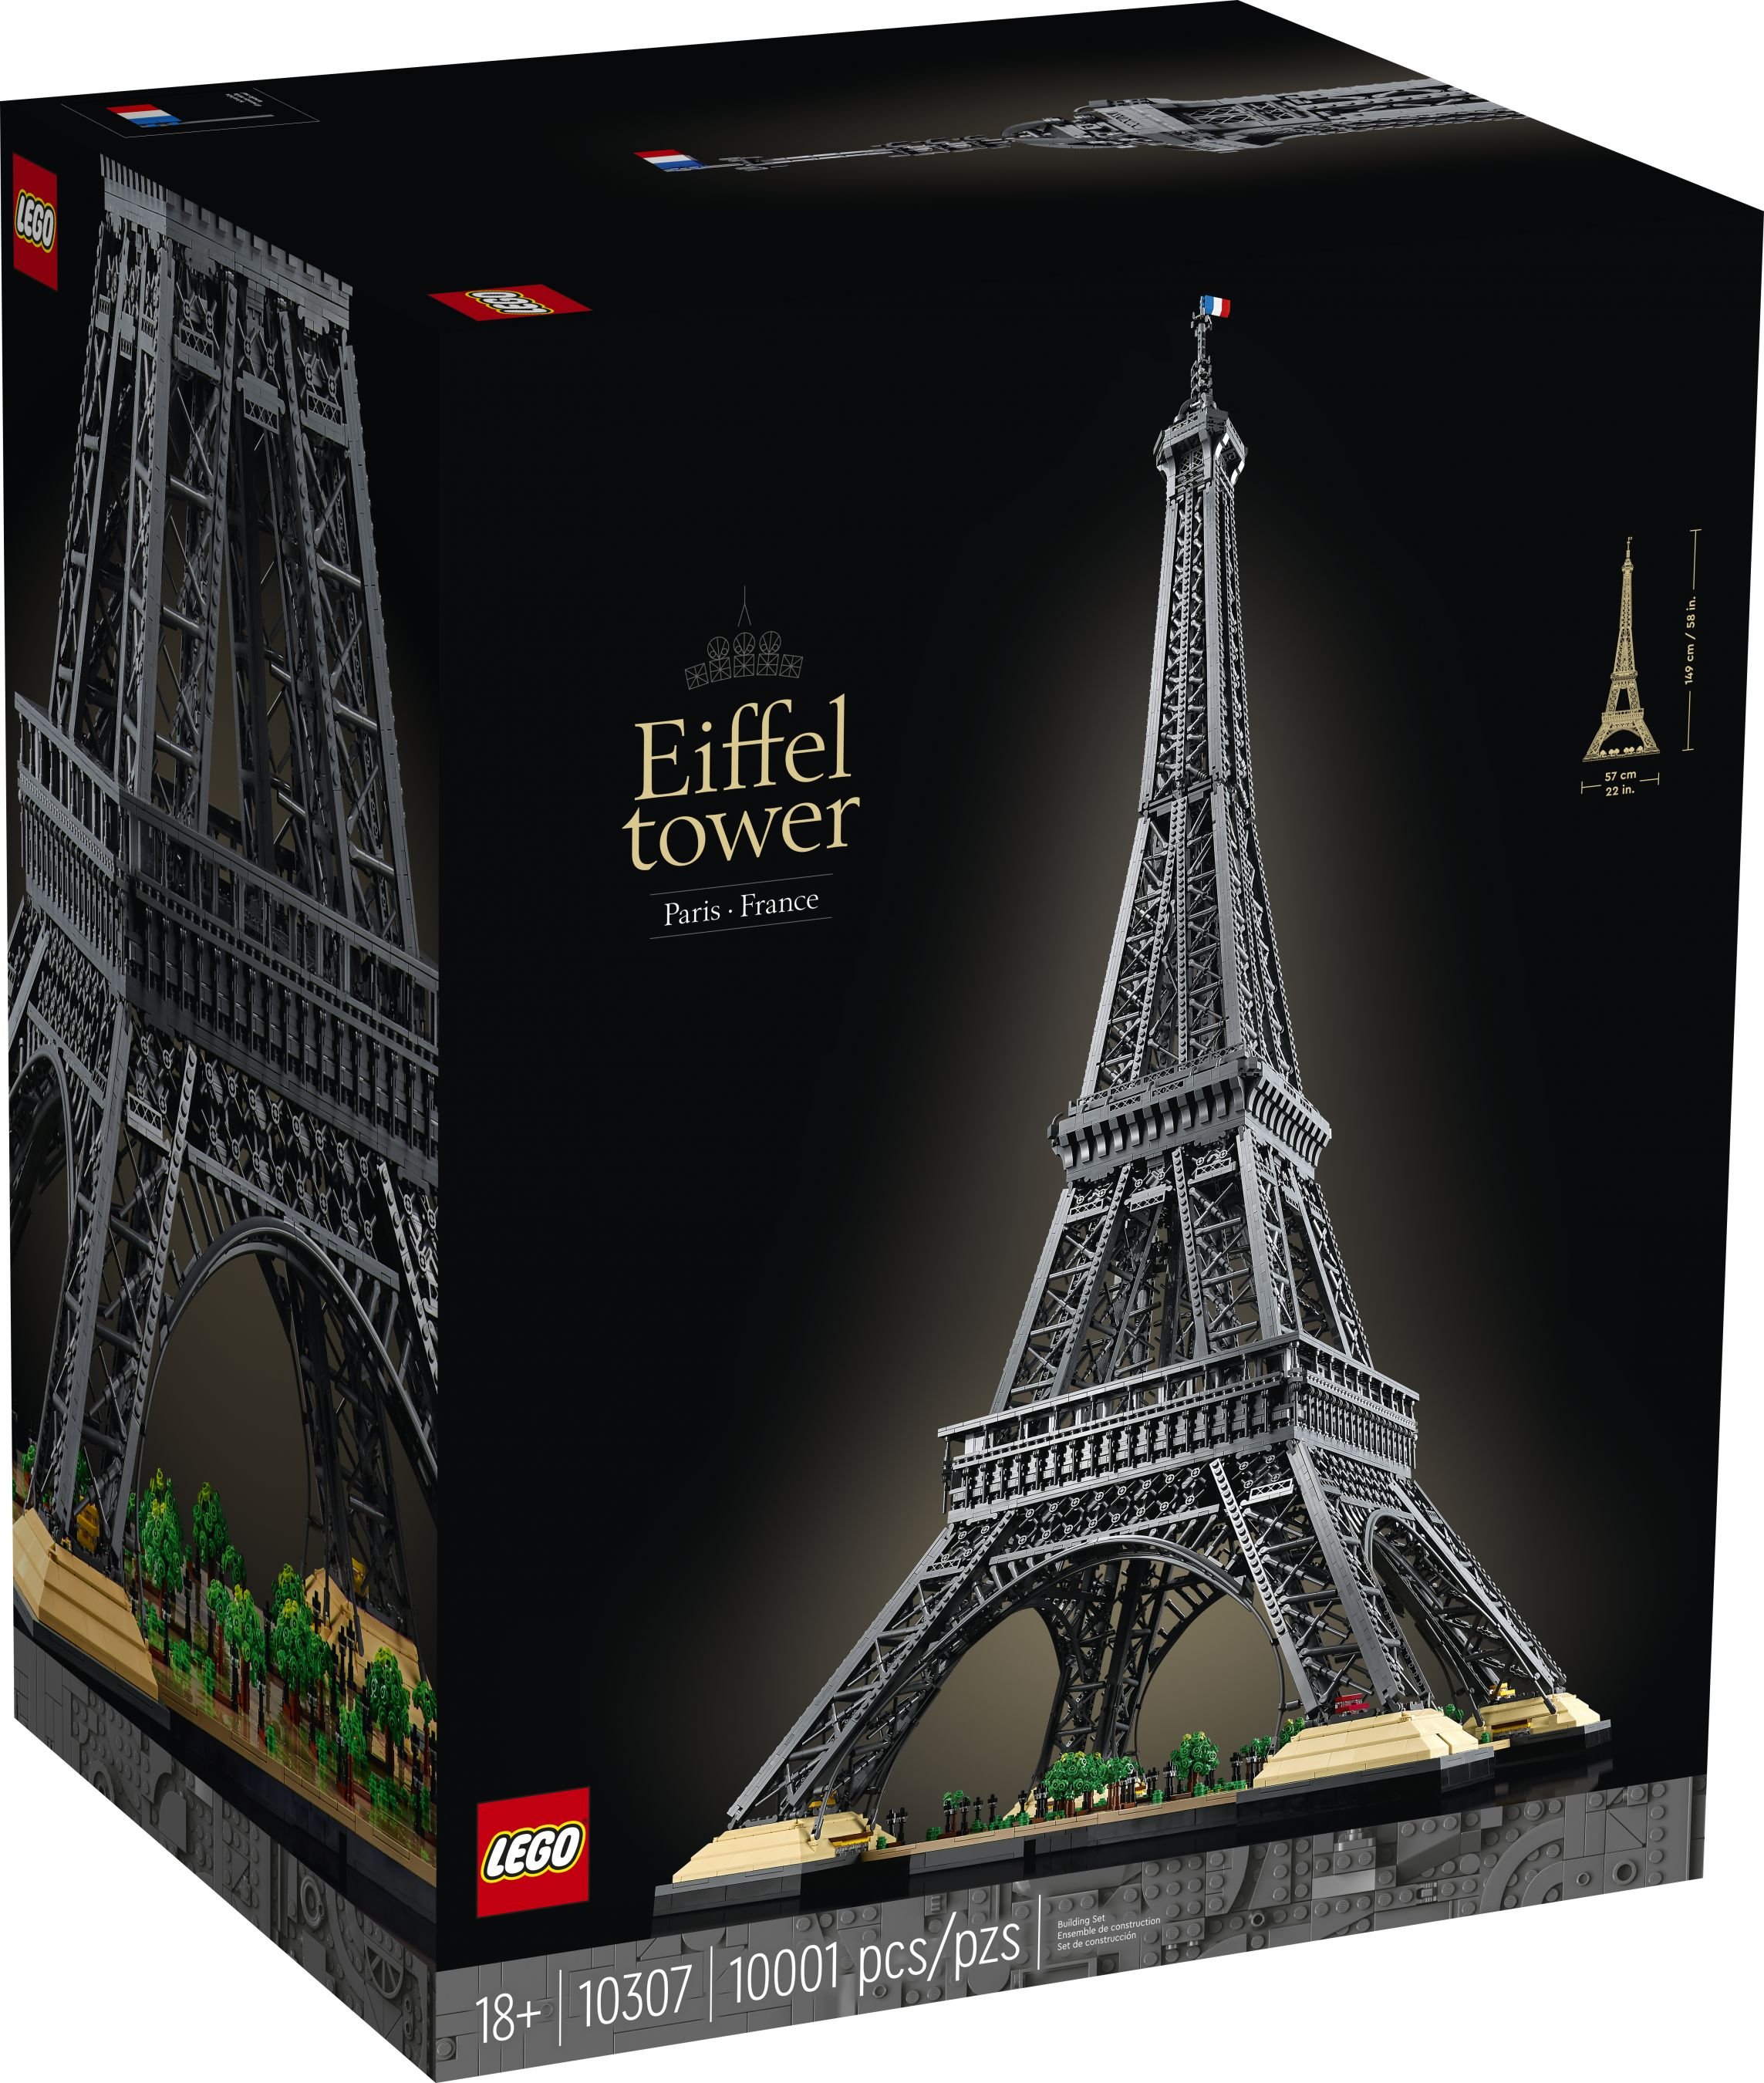 LEGO Advanced Models 10307 Eiffelturm Paris LEGO_10307_alt1.jpg